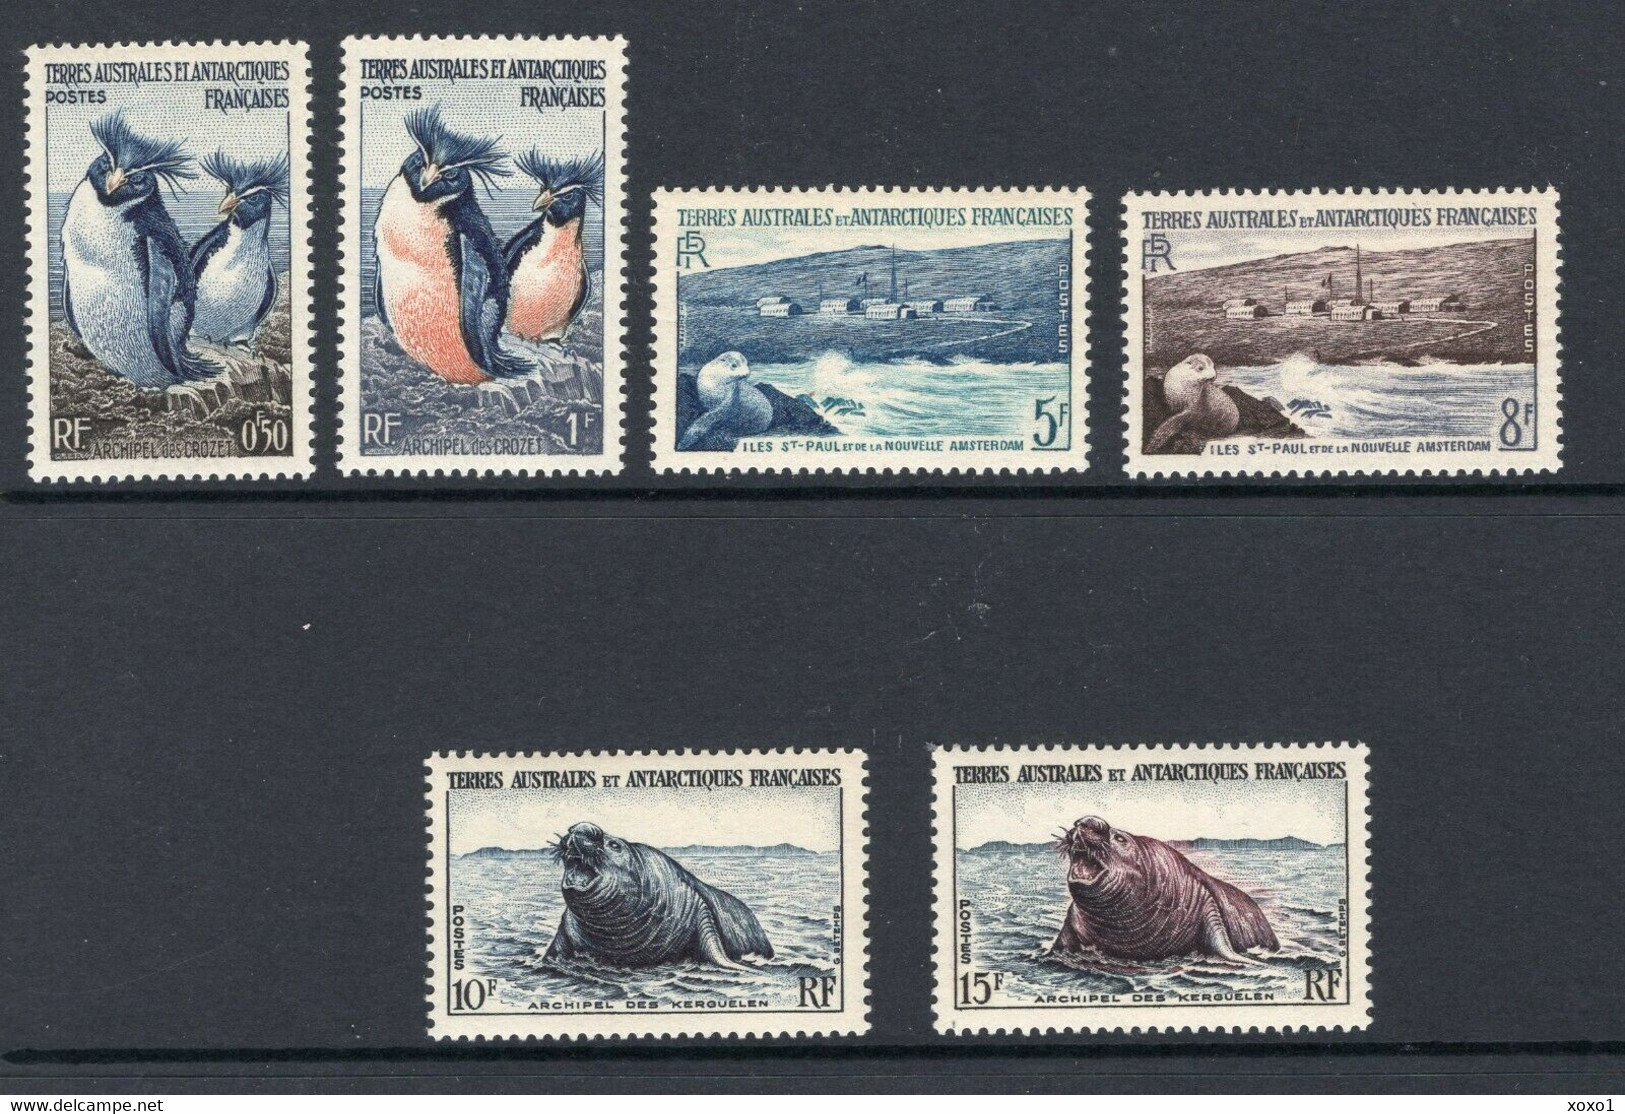 TAAF 1956  Mi.No. 2 - 7  Fr. Antarktis  Antarctic Wildlife BIRDS ANIMALS 6v MNH** 40,00 € - Antarktischen Tierwelt